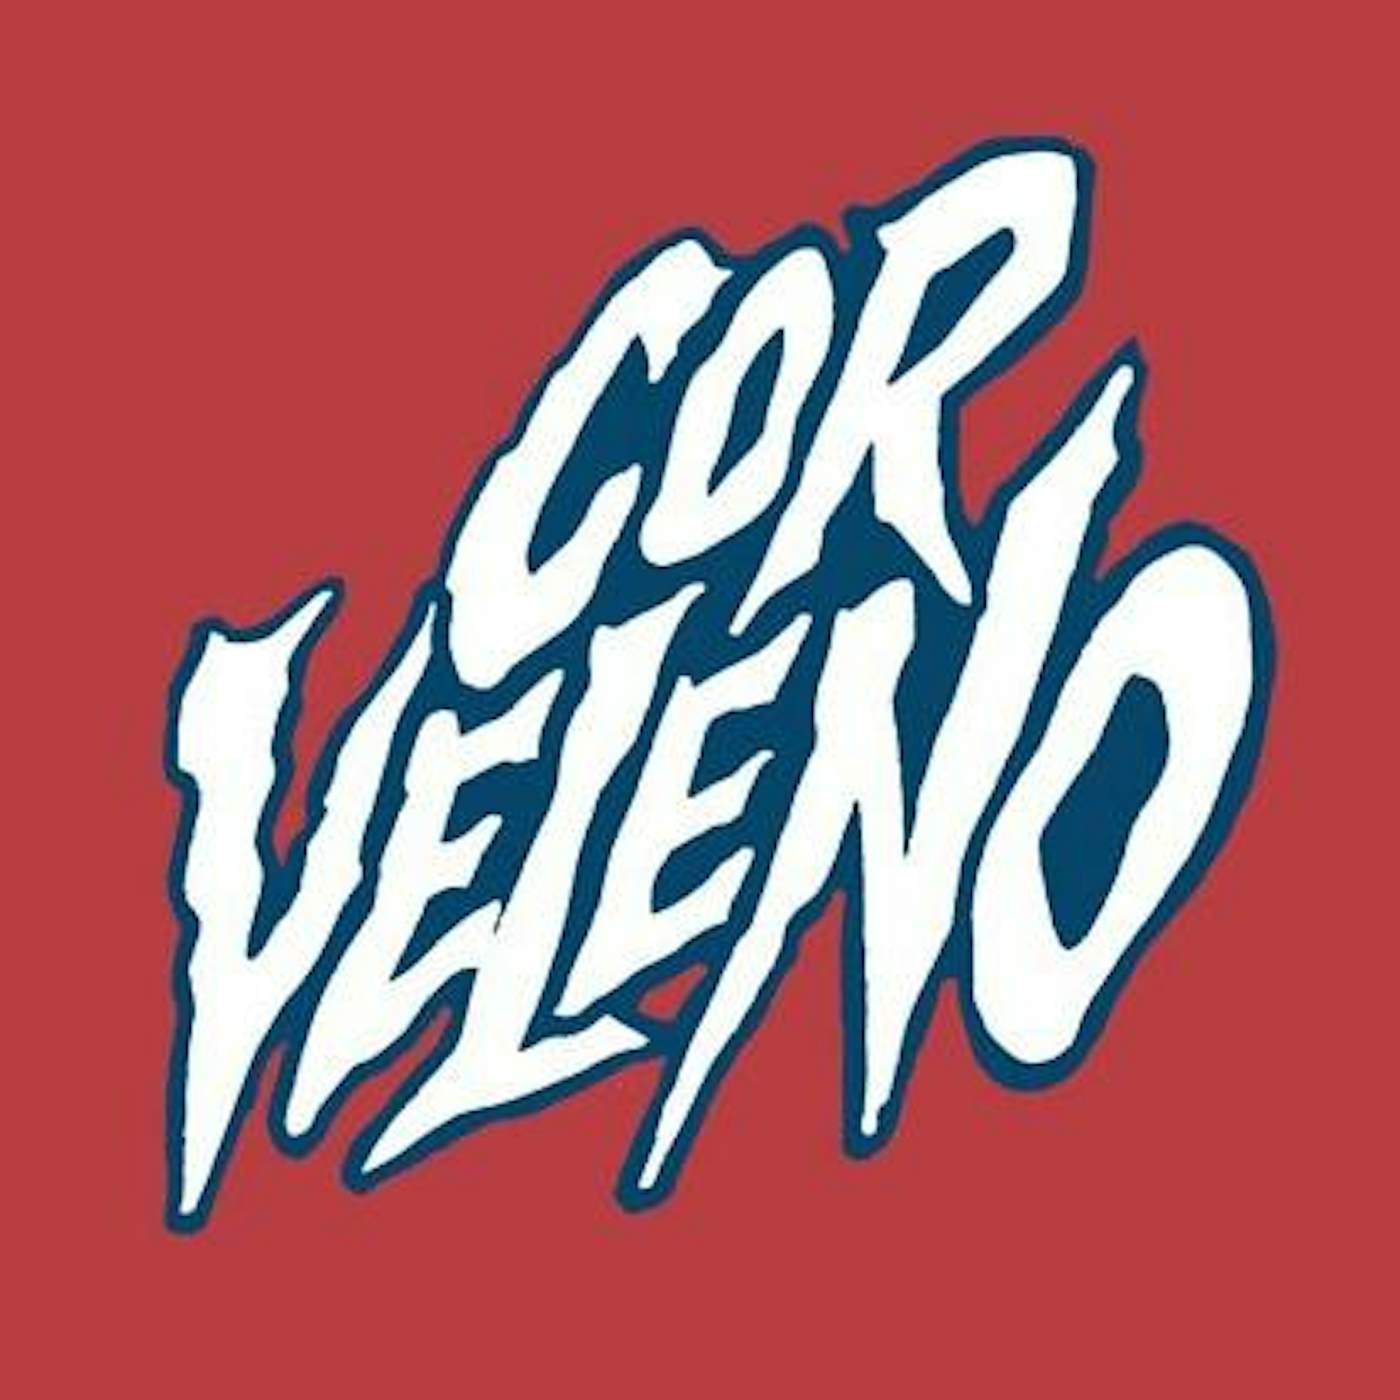 Cor Veleno